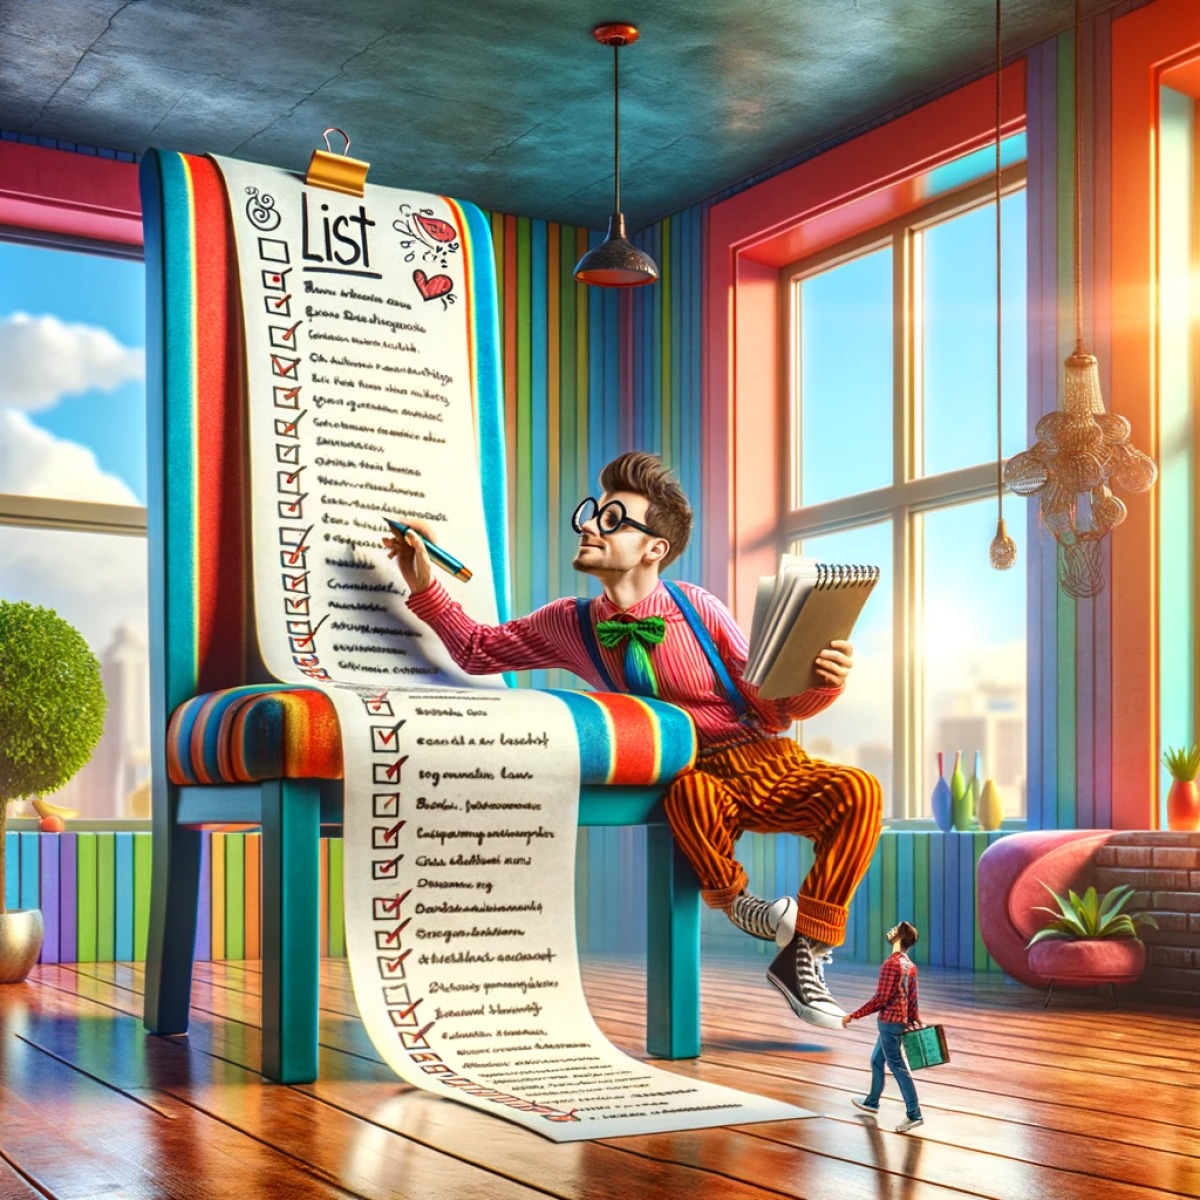 un homme assis sur une chaise coche une liste géante dans une pièce très colorée